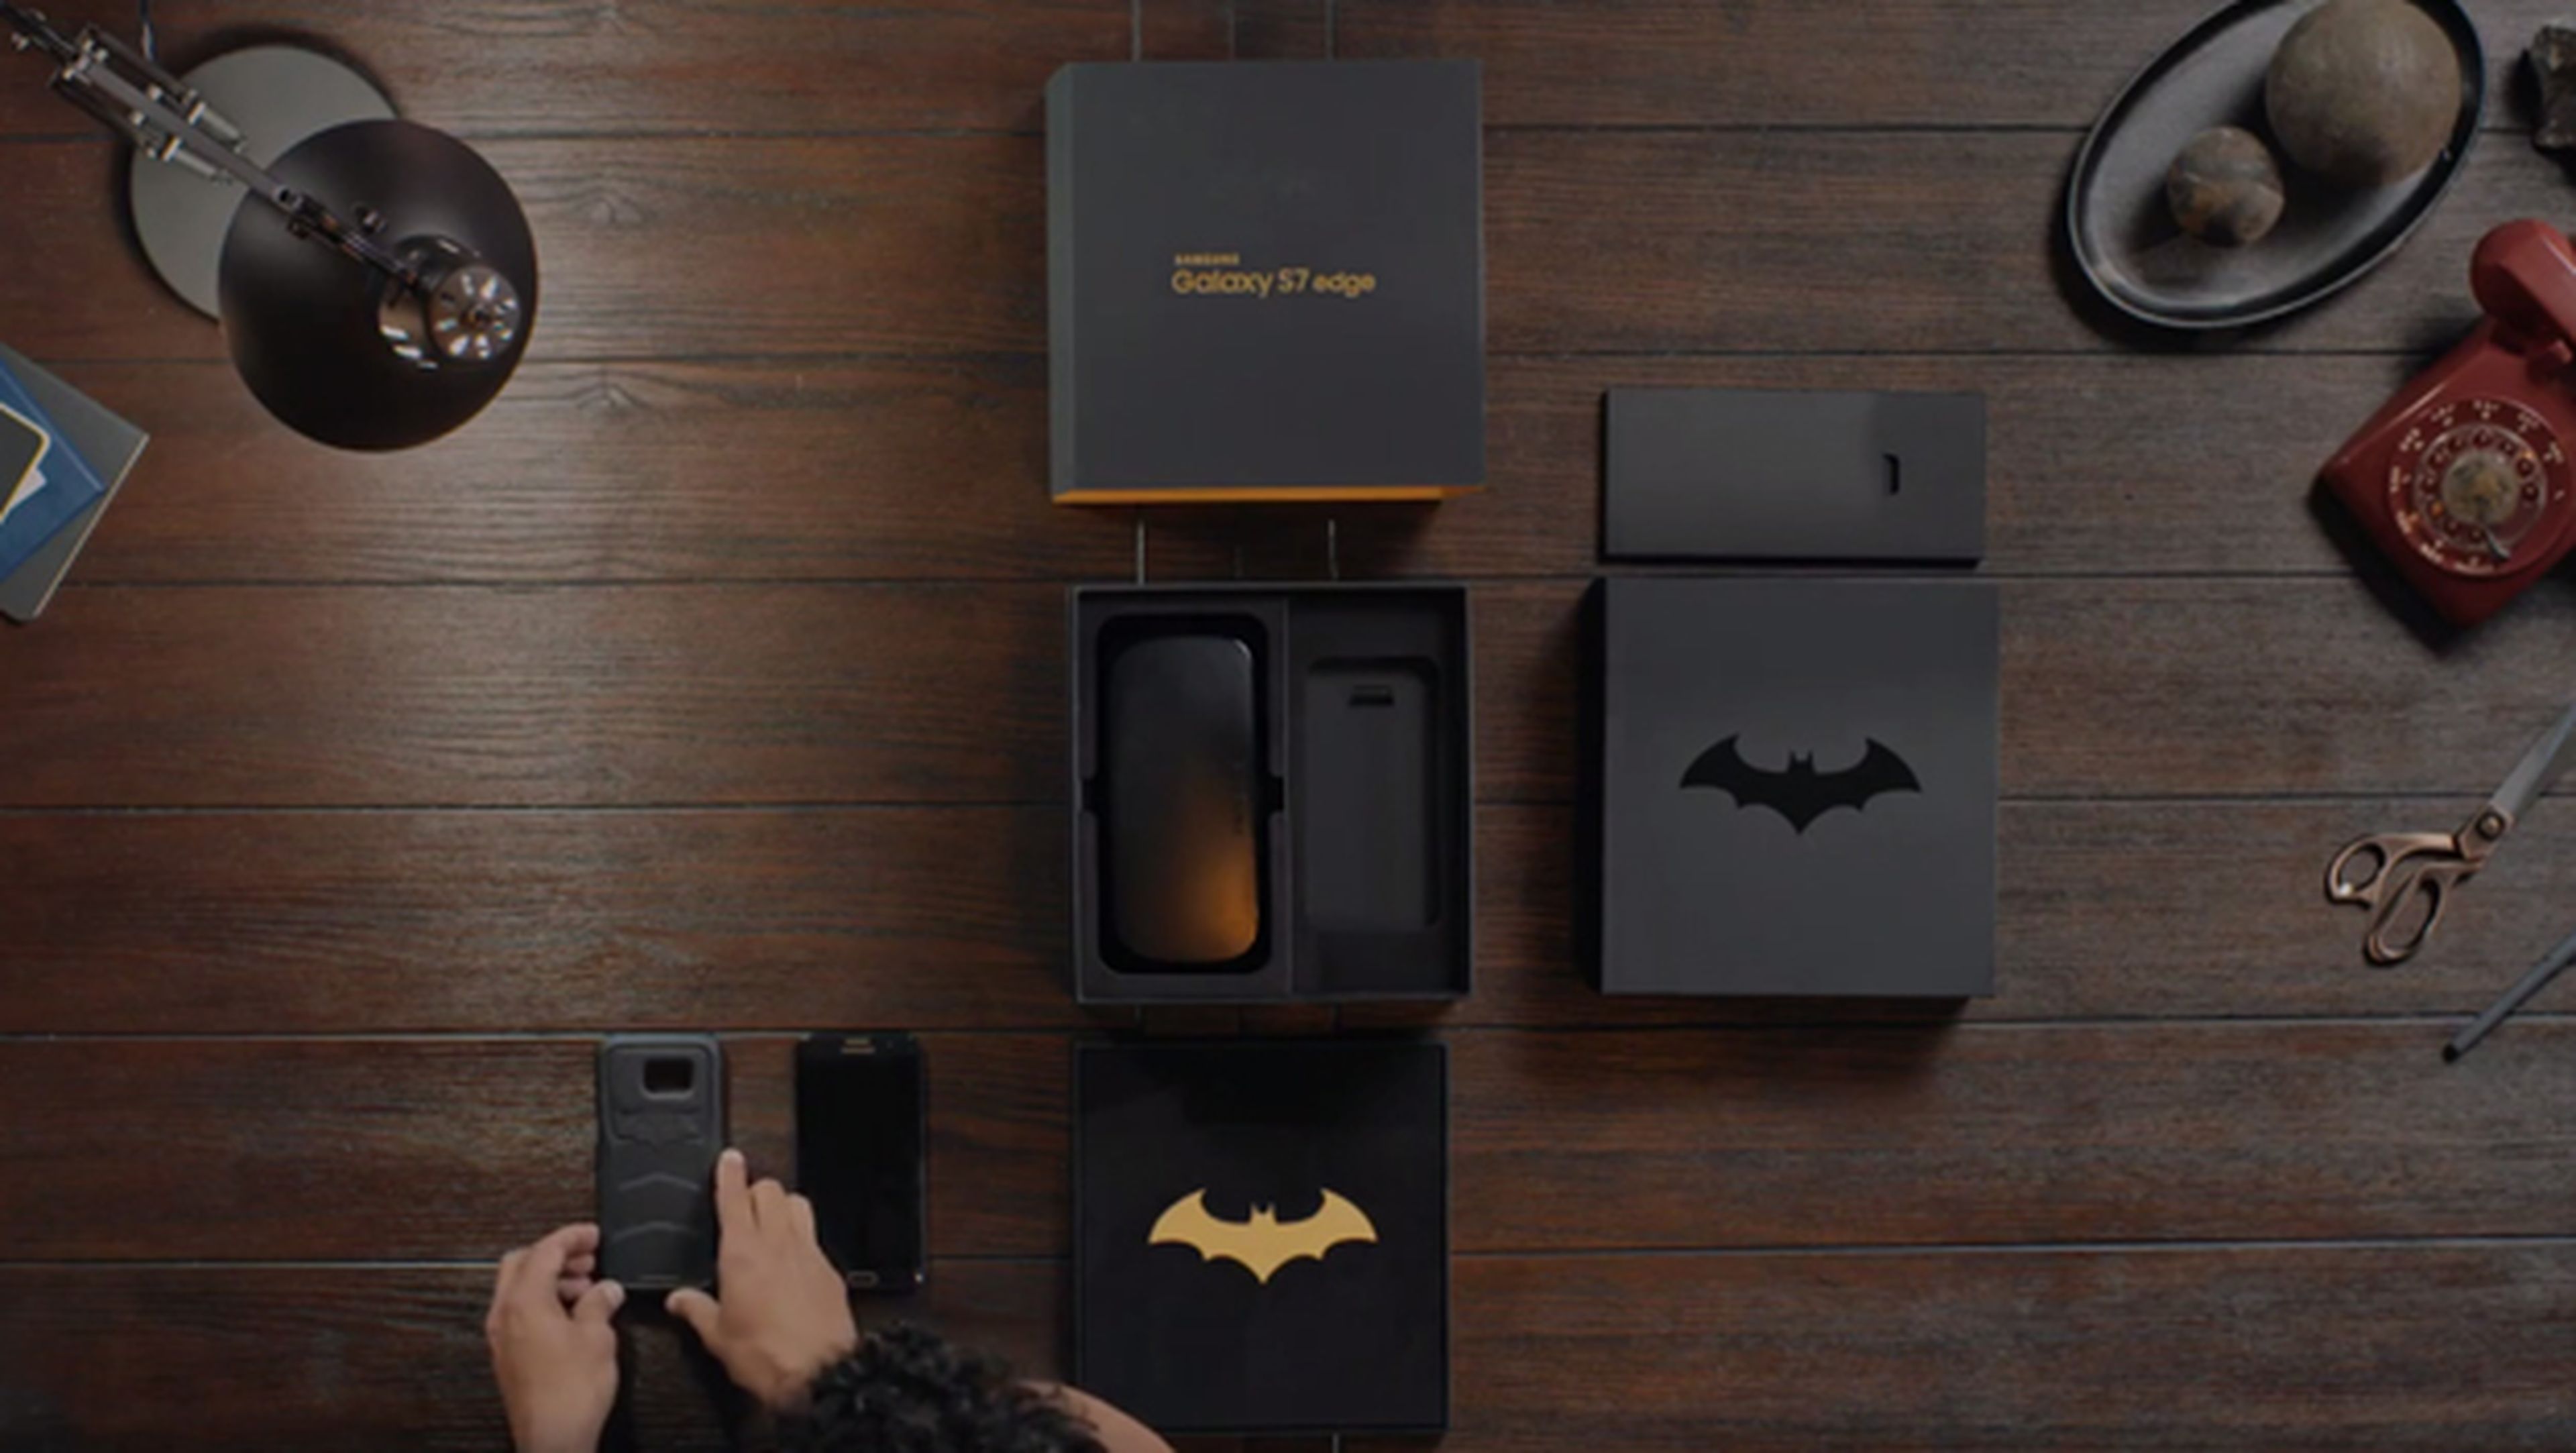 Samsung lanza una edición especial del S7 inspirada en Batman